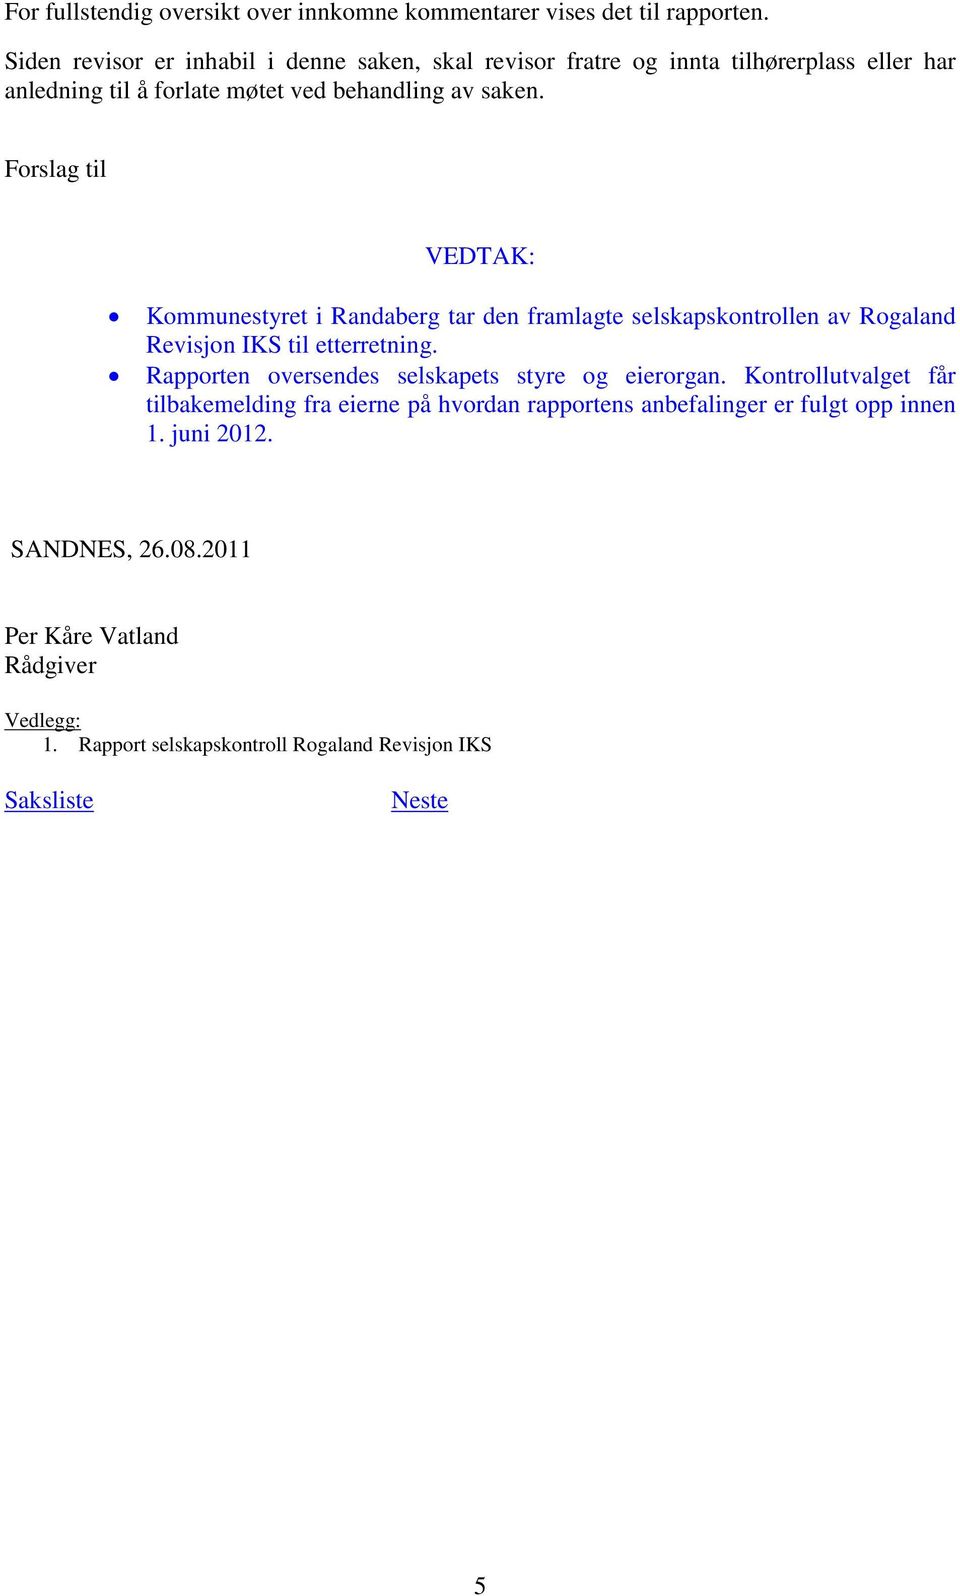 Forslag til VEDTAK: Kommunestyret i Randaberg tar den framlagte selskapskontrollen av Rogaland Revisjon IKS til etterretning.